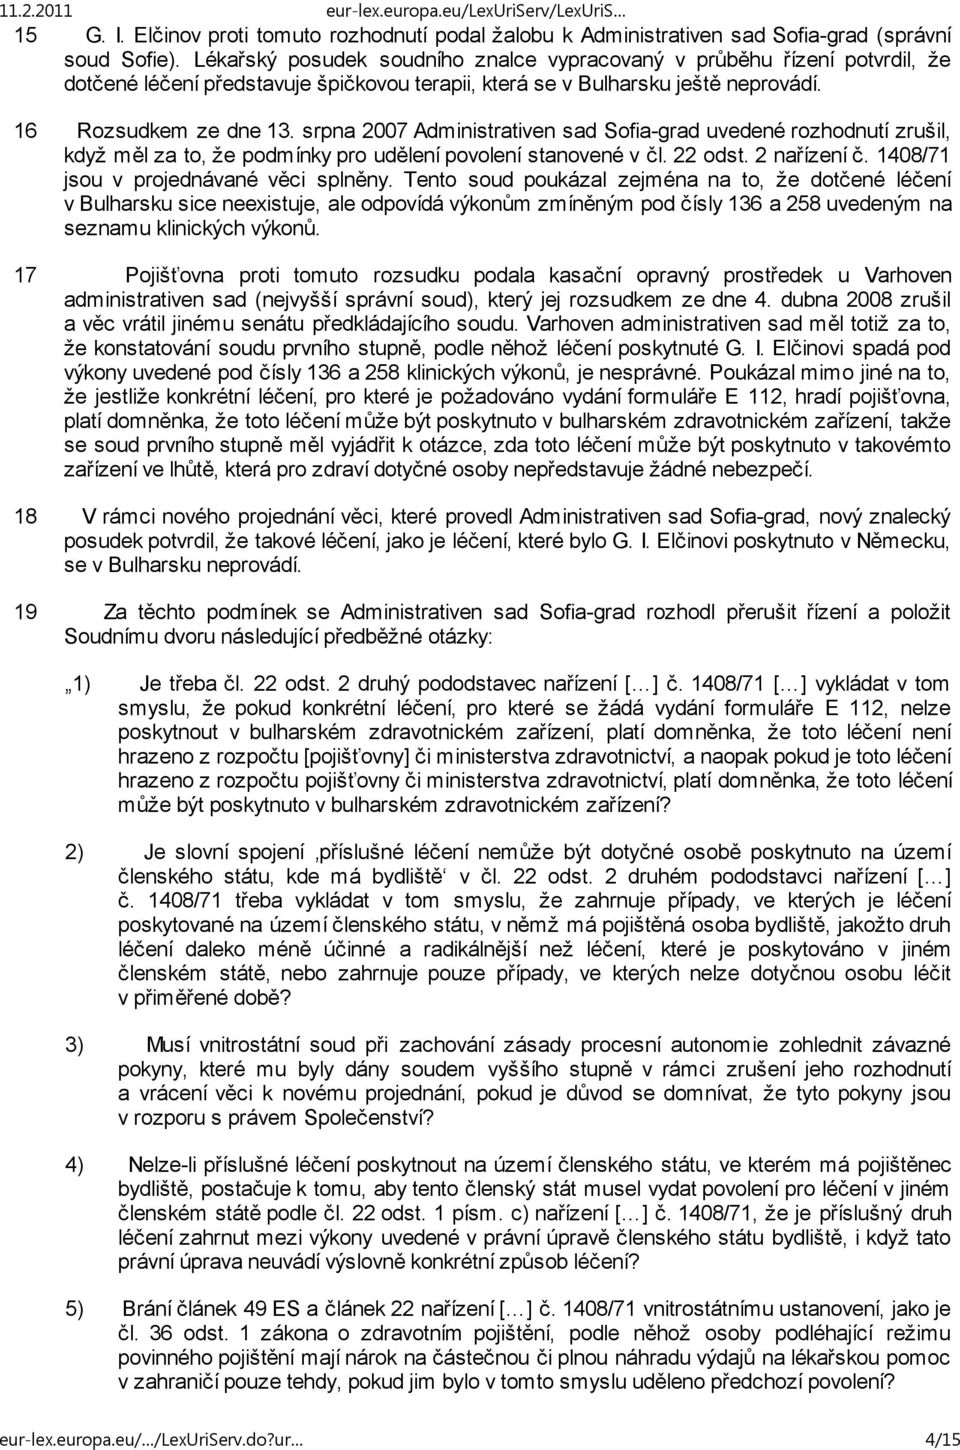 srpna 2007 Administrativen sad Sofia-grad uvedené rozhodnutí zrušil, když měl za to, že podmínky pro udělení povolení stanovené v čl. 22 odst. 2 nařízení č. 1408/71 jsou v projednávané věci splněny.